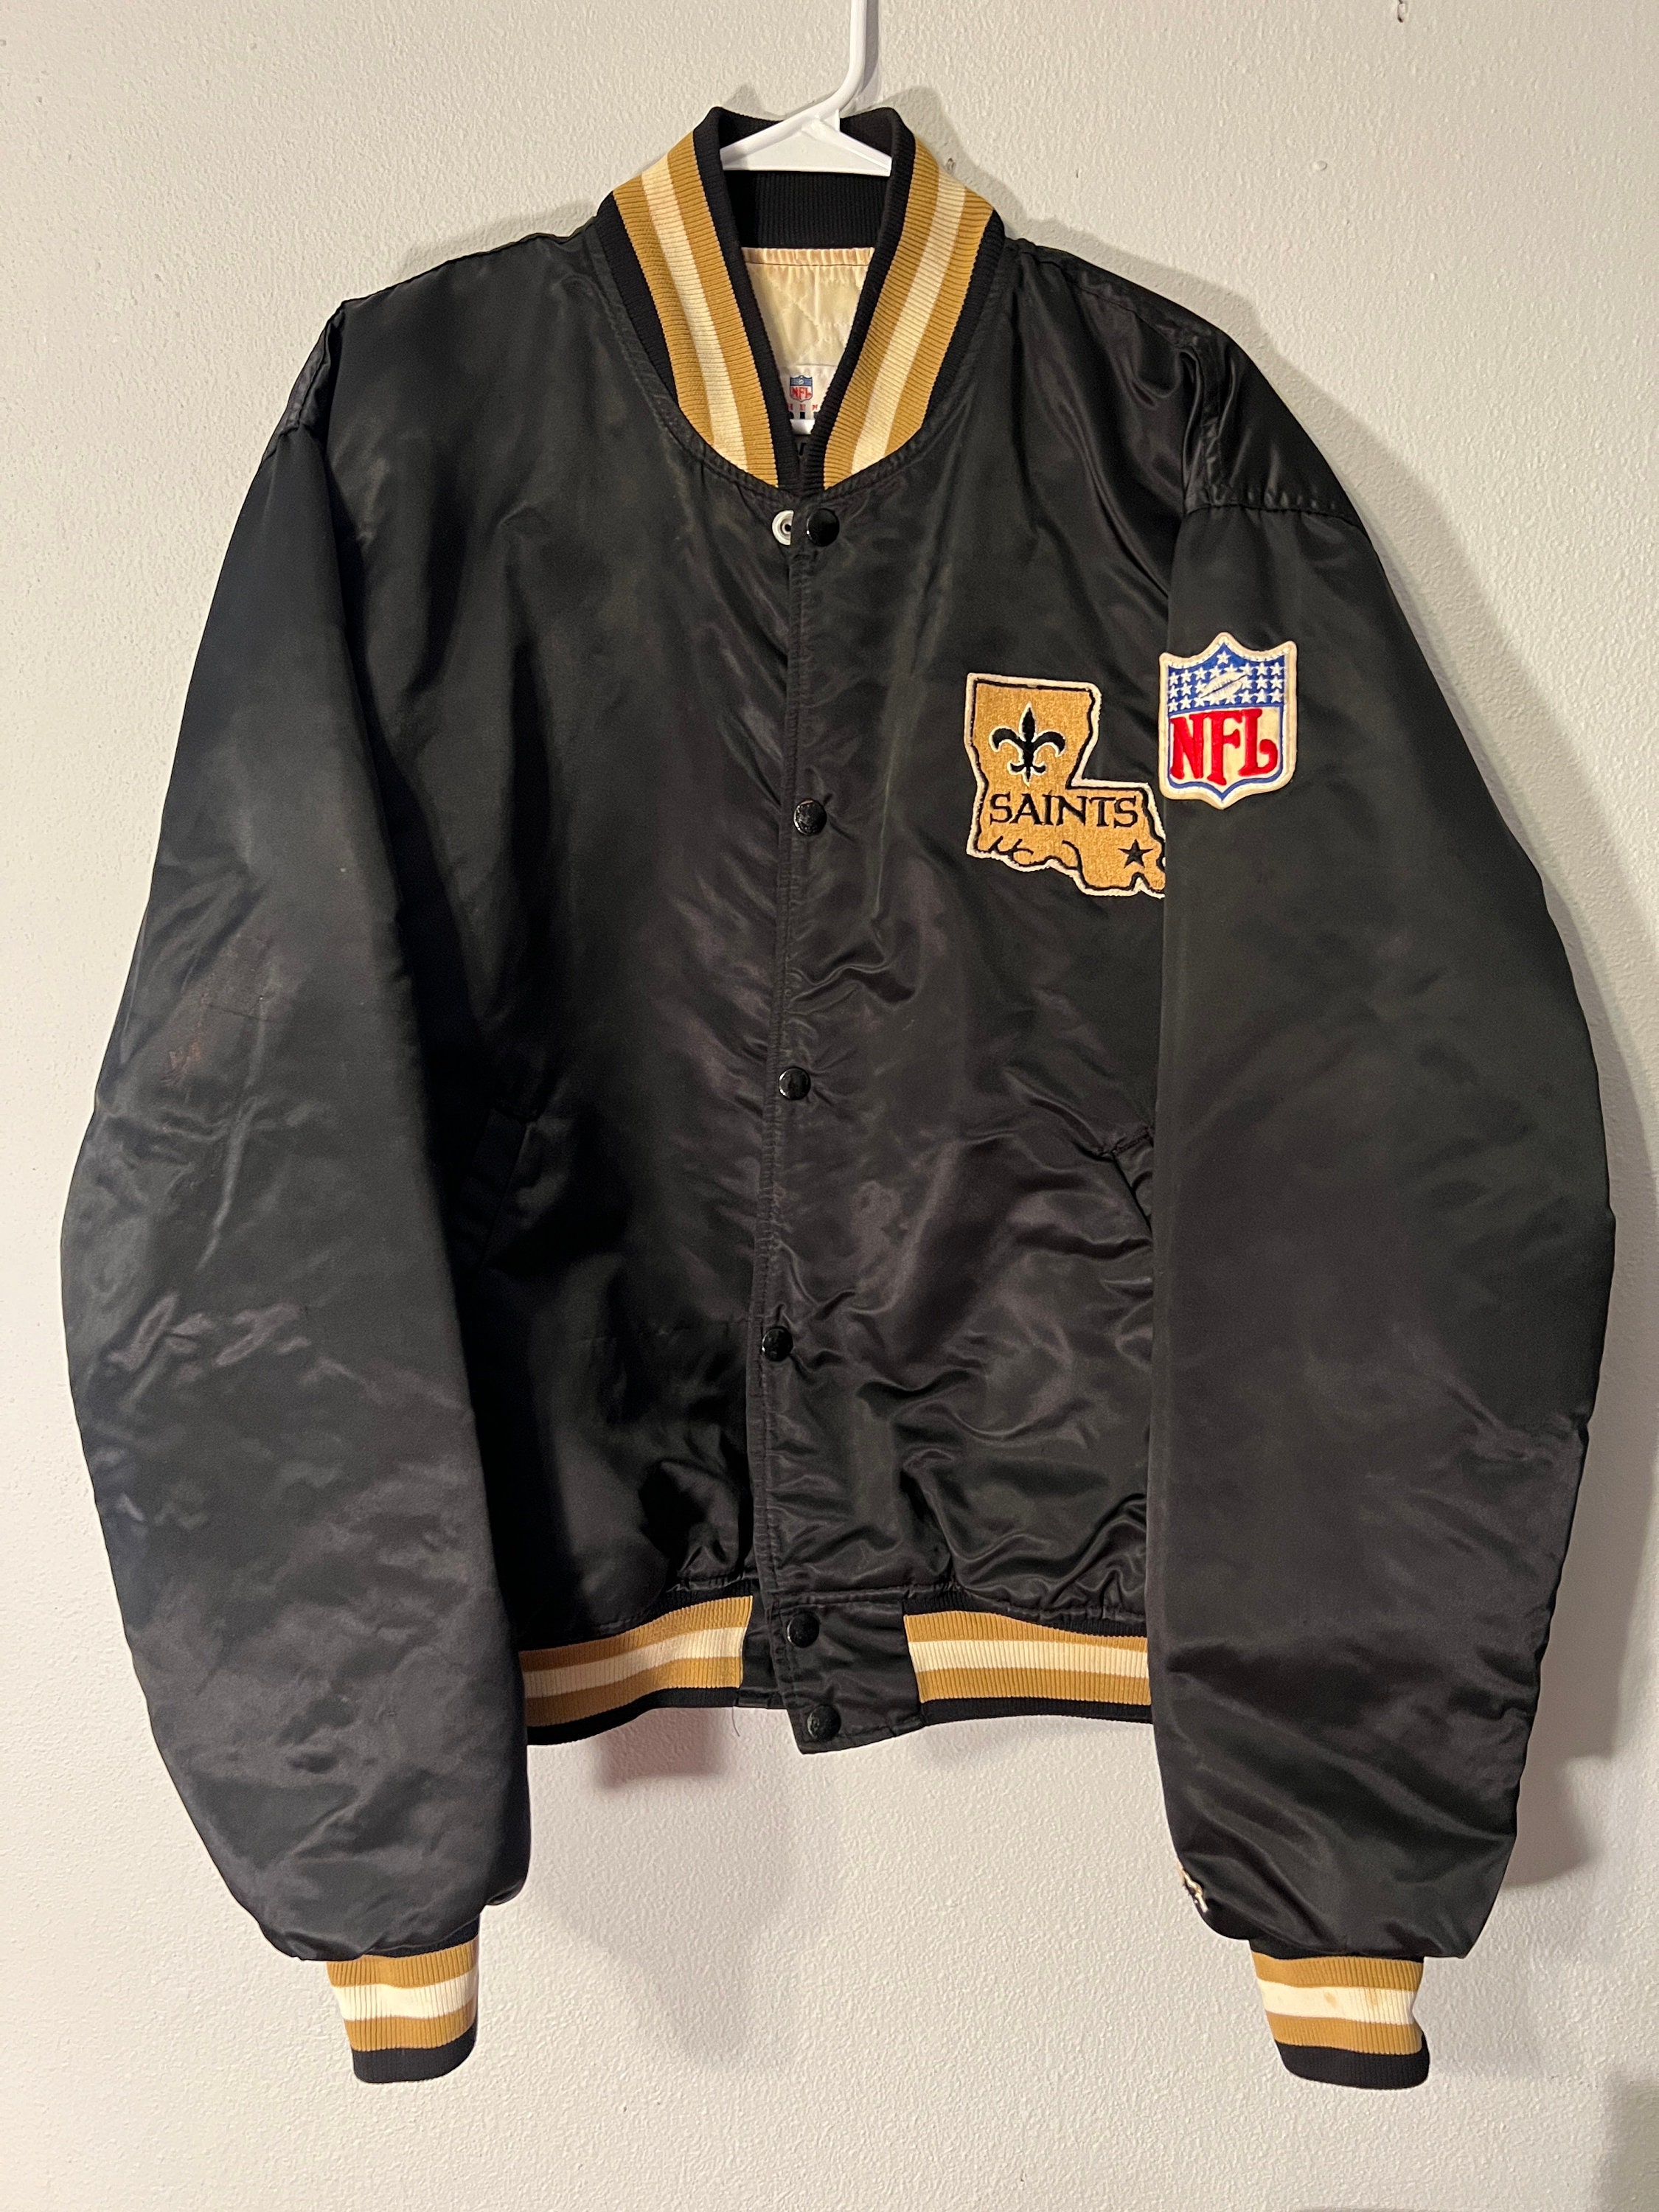 FB_Helmet_Guy on X: NFL Starter jacket battle. 80s vs 90s. Who